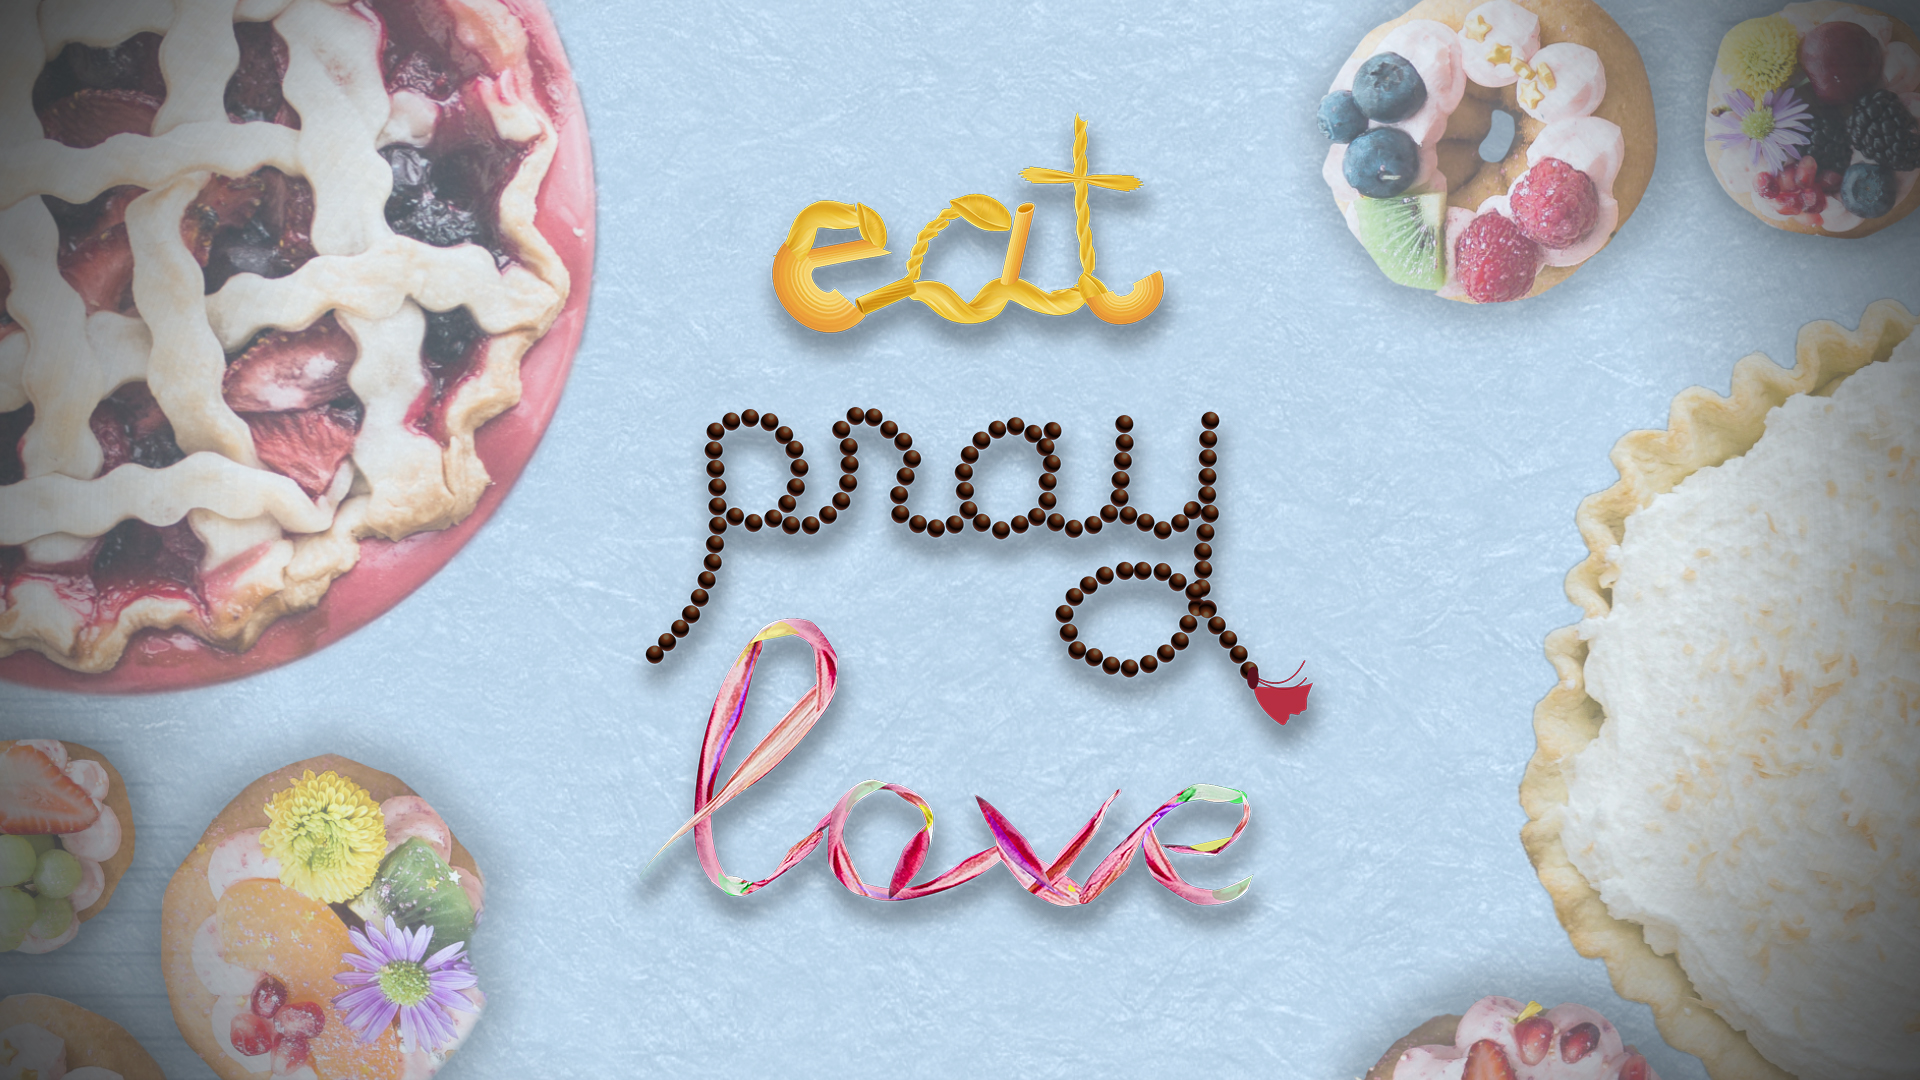 Eat, Pray, Love (TV)